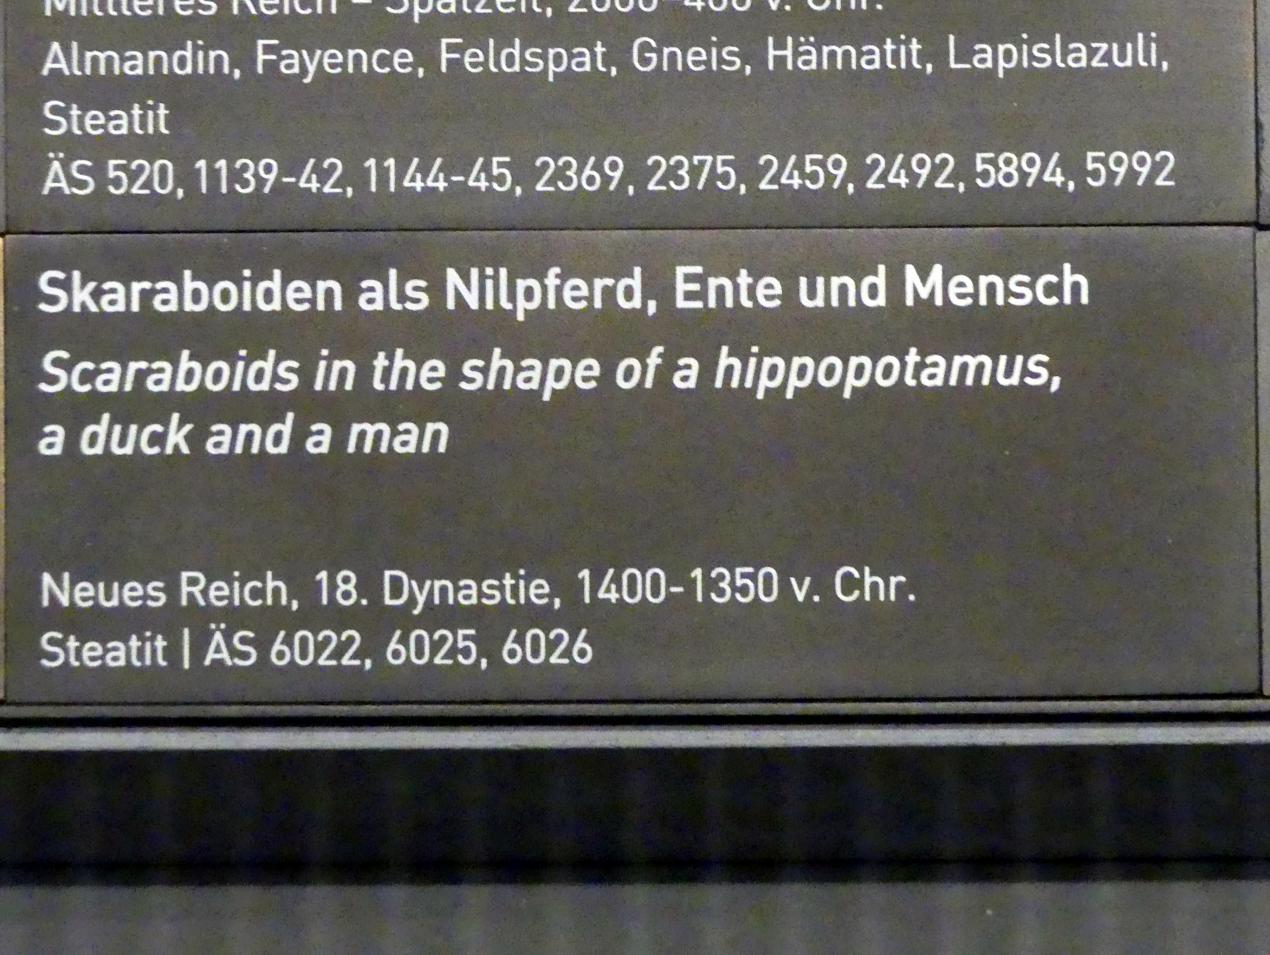 Skaraboiden als Nilpferd, Ente, Mensch, 18. Dynastie, Undatiert, 1400 - 1350 v. Chr., Bild 2/2